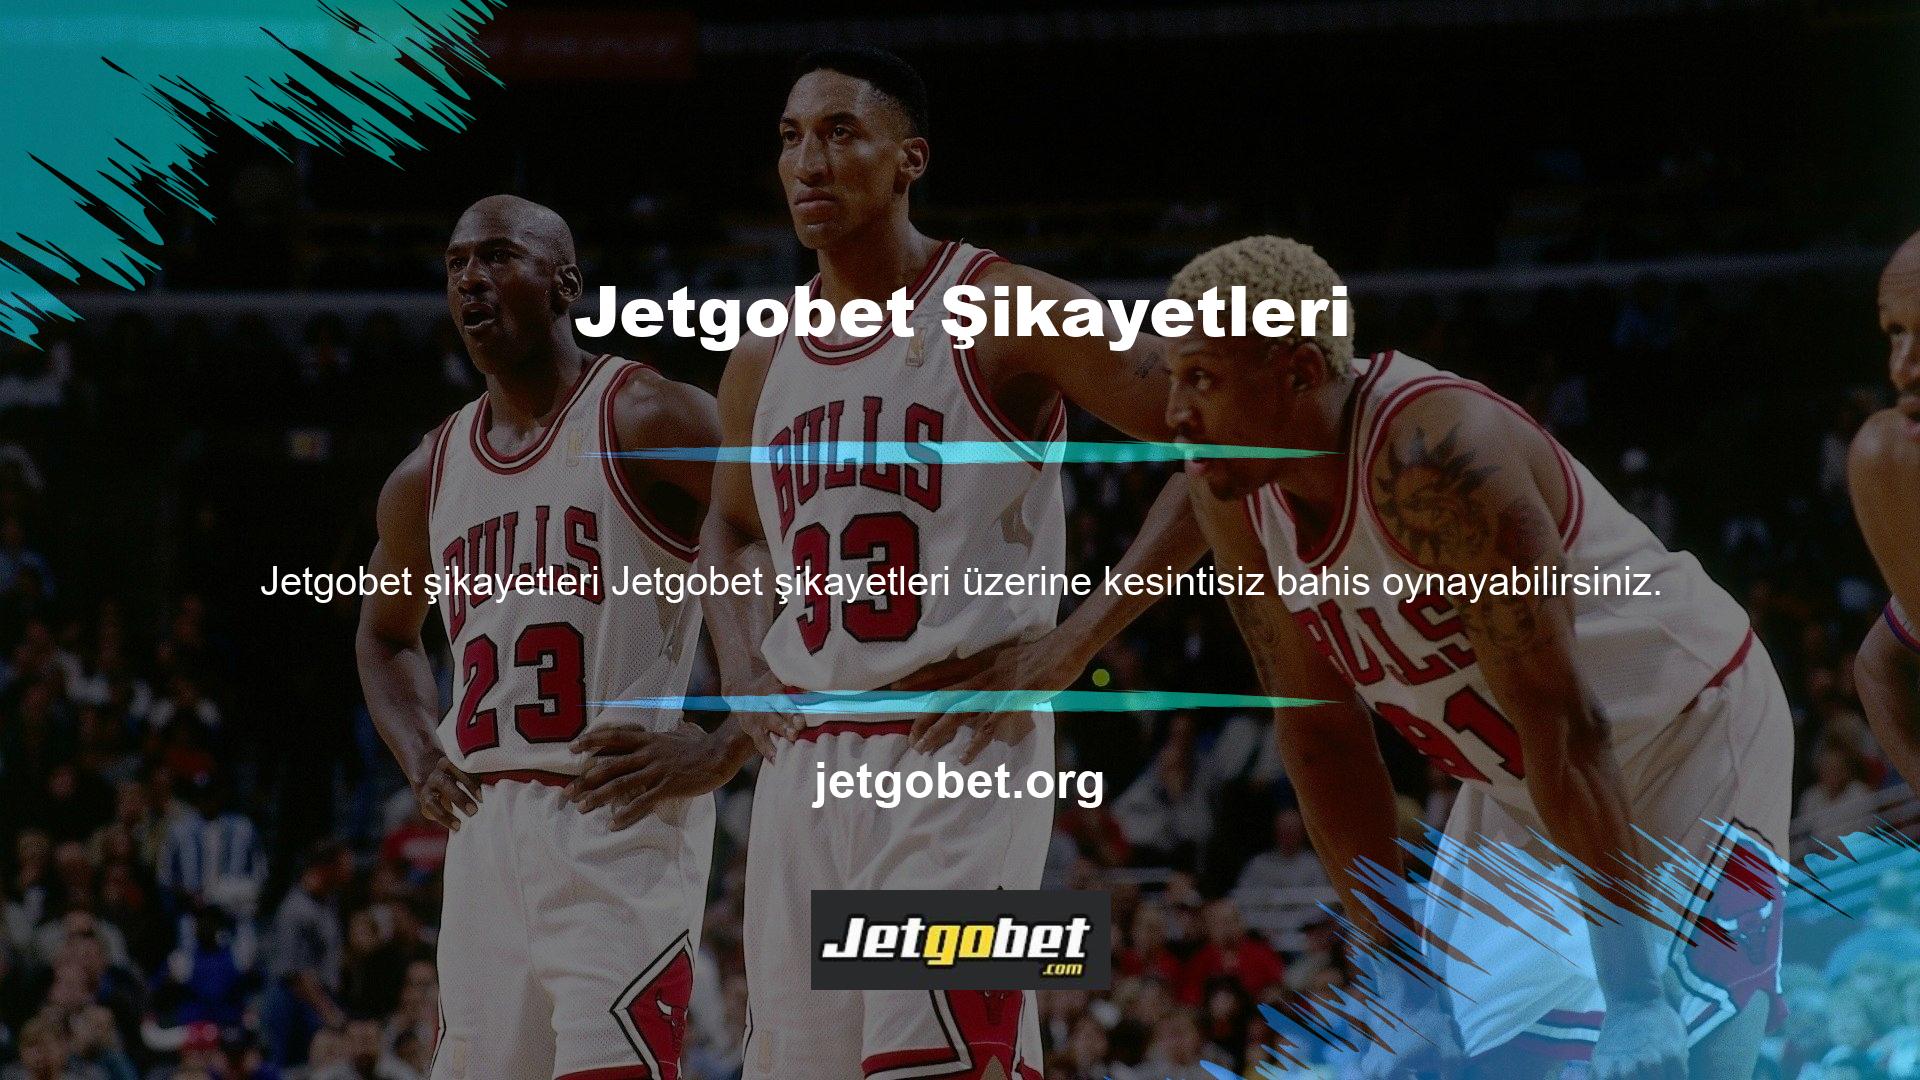 Her zaman olduğu gibi web sitemizi takip ederek Jetgobet şikayet, haber ve güncellemeleri alabilirsiniz